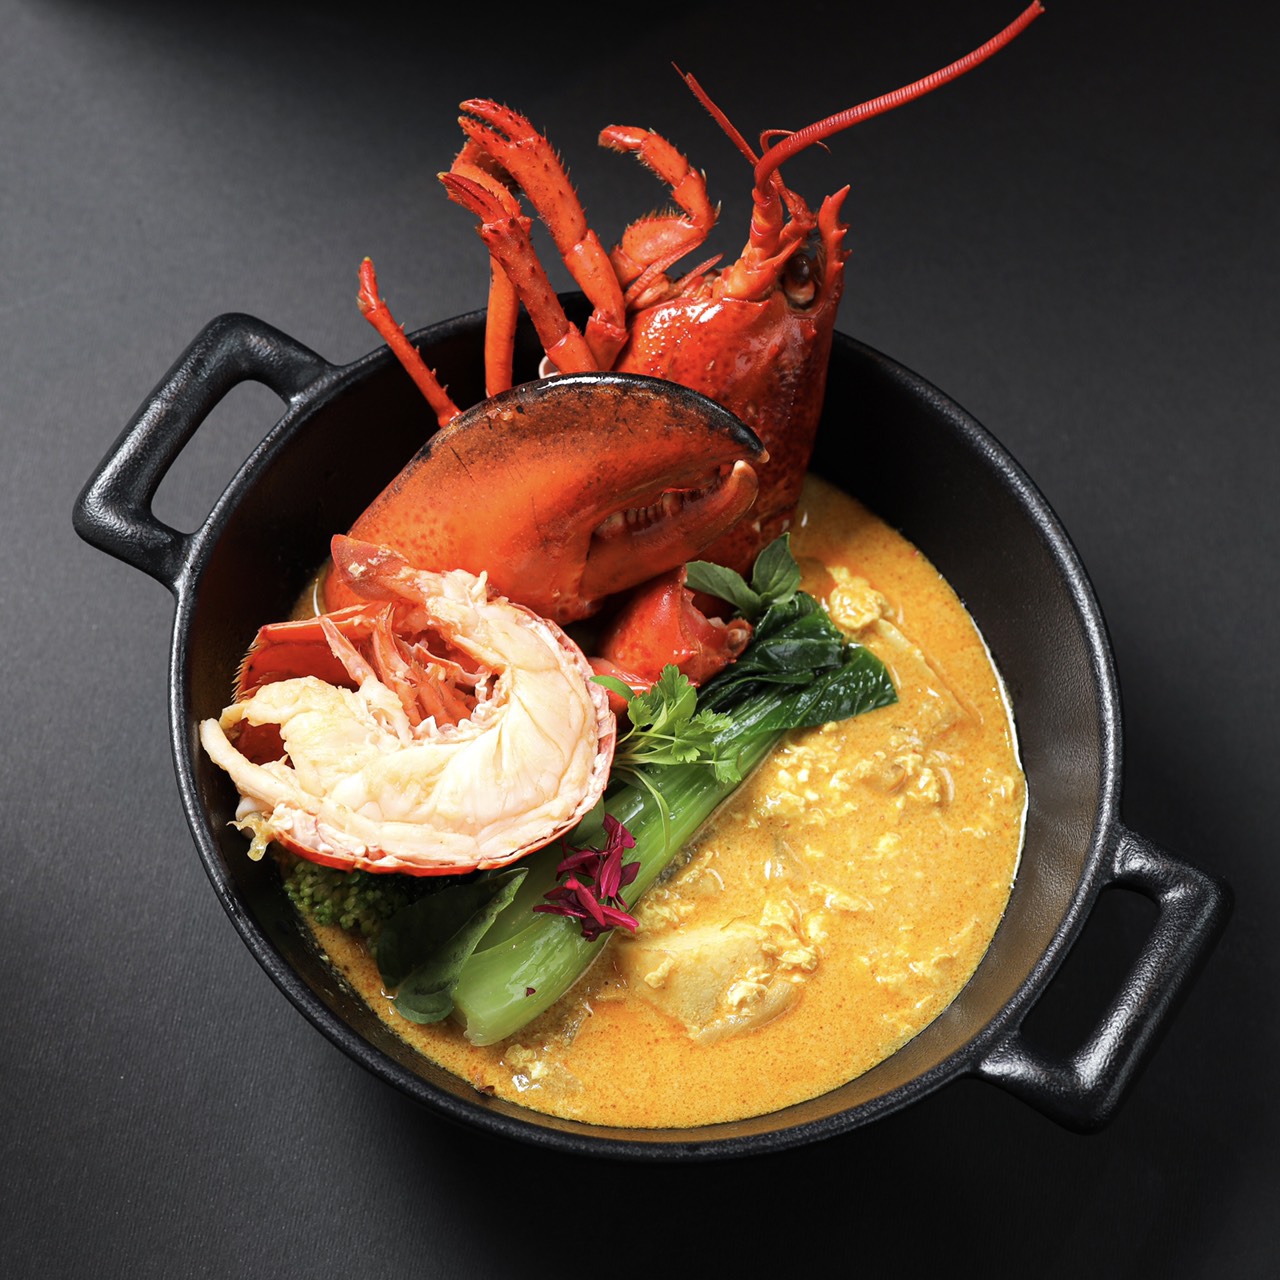 泰式黃金咖哩龍蝦飯 Thai Lobster Golden Curry Rice